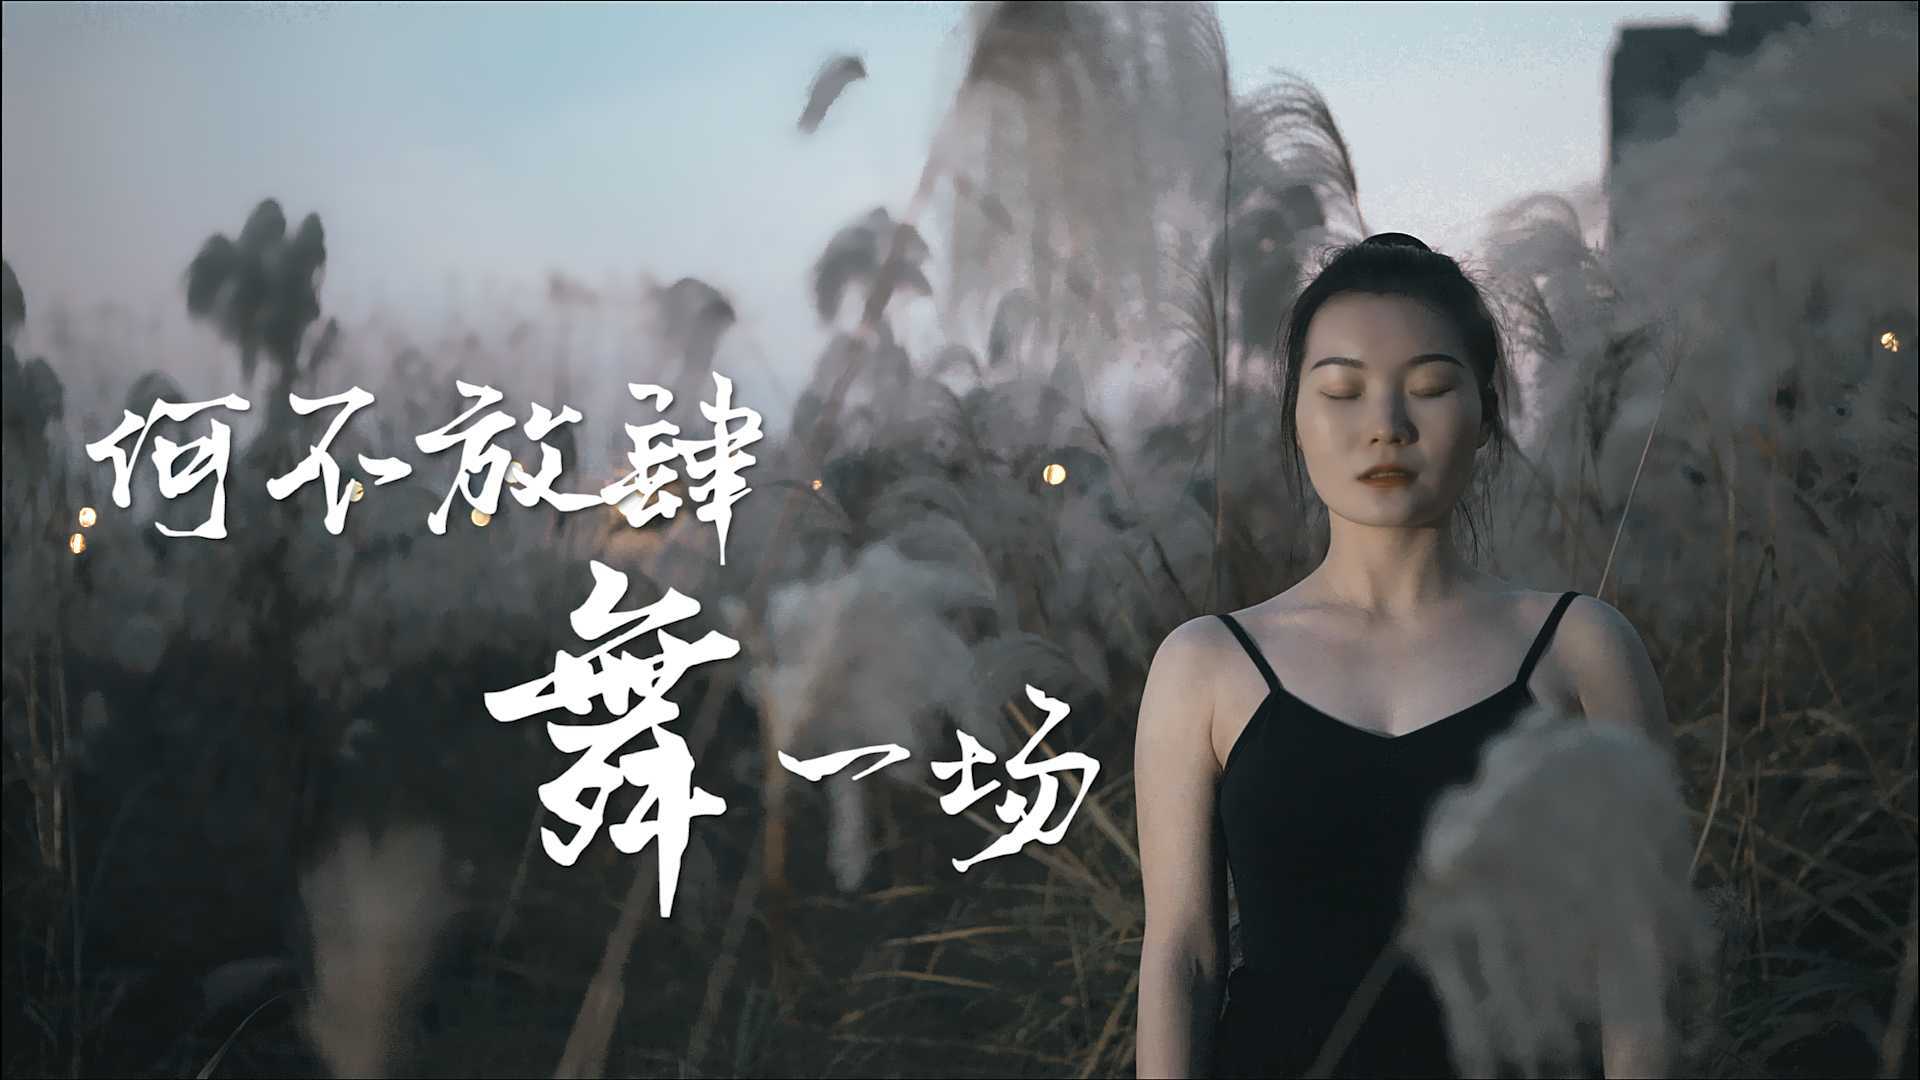 单色舞蹈(长沙)中国舞雪雪进修班学员纪录片-唐梦婷